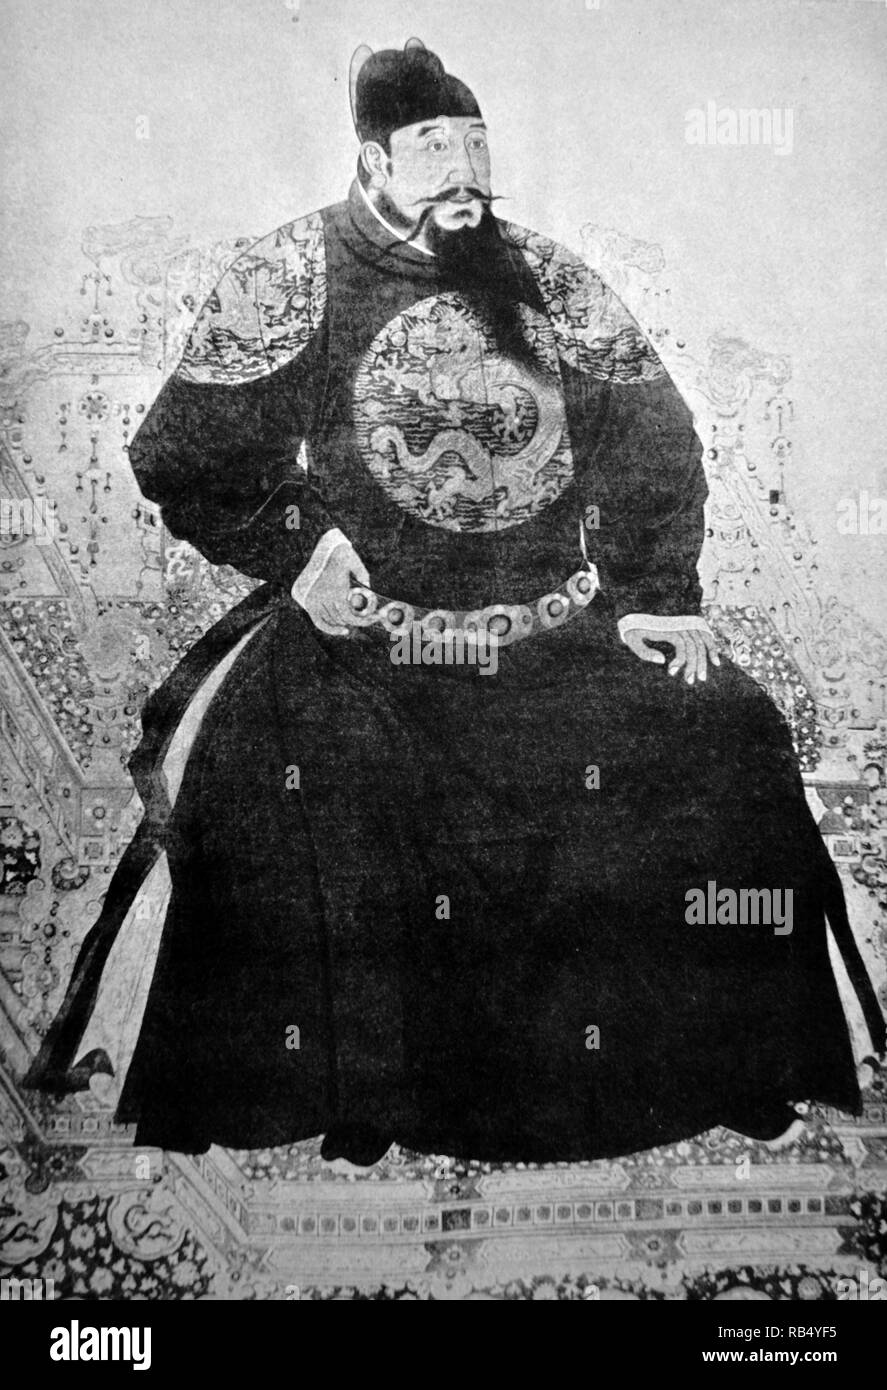 L'imperatore Yongle (1360 - 1424), precedentemente Romanised come Yung-lo o Yonglo Imperatore, fu il terzo imperatore della dinastia Ming in Cina, che regna dal 1402 al 1424 Foto Stock